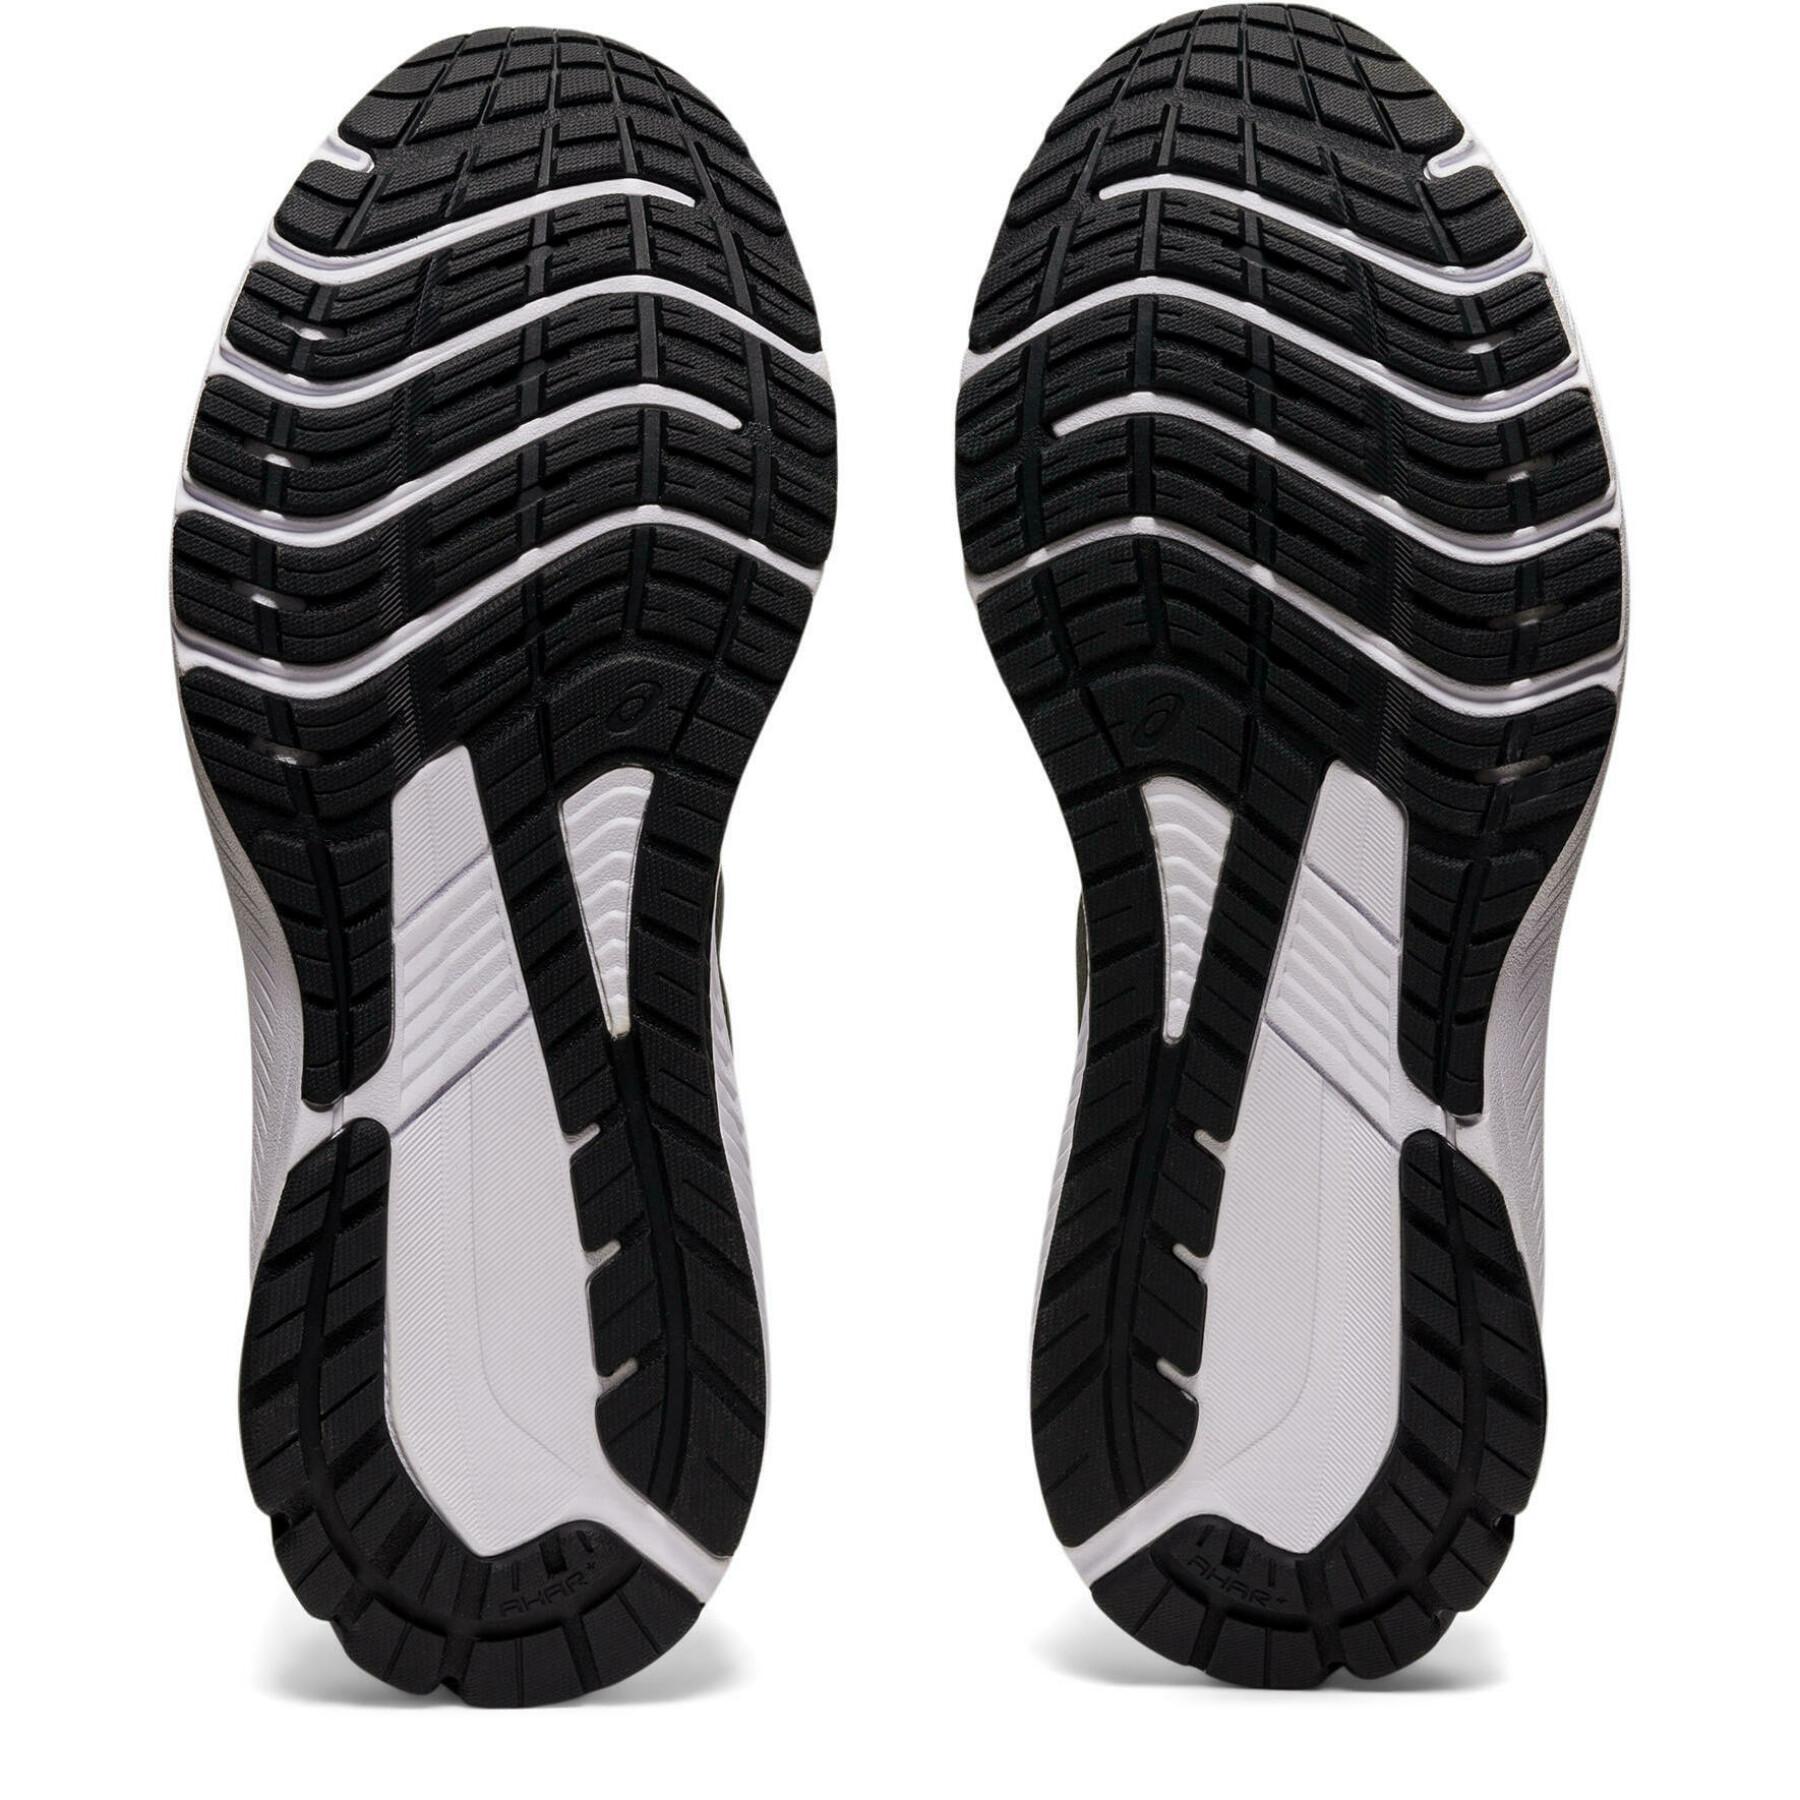 Schuhe Asics Gt-1000 11